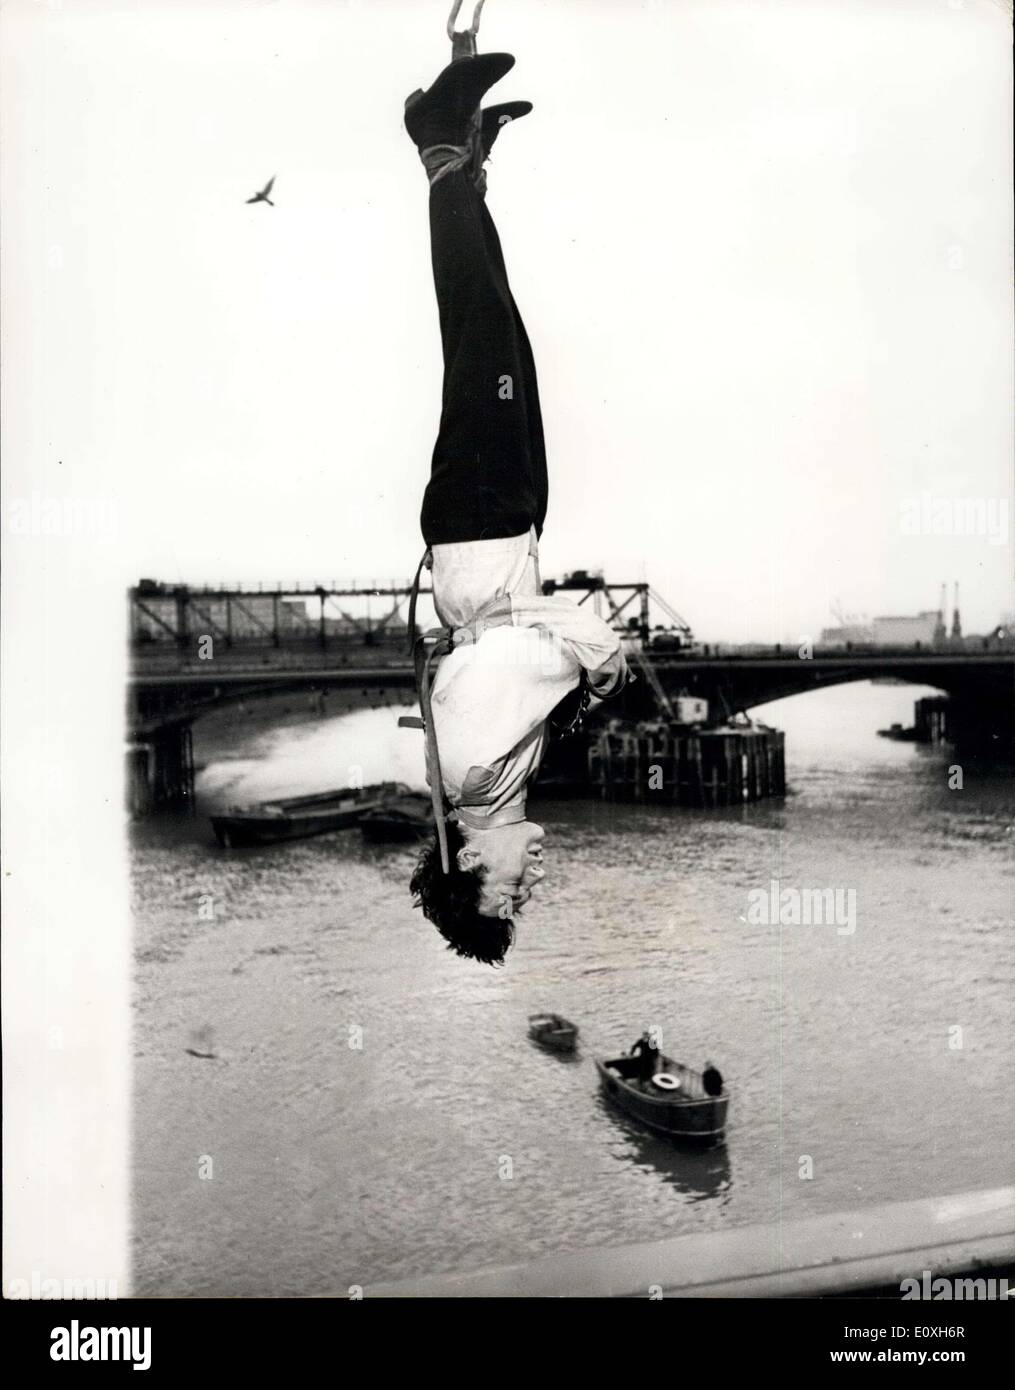 Le 19 décembre 1966 - défi Escapologist accepte de s'échapper d'une camisole de force si suspendu à l'envers sur Thames : Timothy Dill-Russell, conseiller l'assassin pour la comédie musicale "'Man of Magic'' au Piccadilly Theatre aujourd'hui a tenté un style Houdini échapper à un carcan alors que suspendu par ses talons à l'envers d'une grue sur la Tamise à Chelsea Bridge. Il a été mis au défi de le faire par Stuart Damon, qui joue de Houdini dans le spectacle. Photo montre Timothy Dill-Russell vu suspendu par ses talons au-dessus de la Tamise, au cours de sa fuite du corset et des menottes hier. Banque D'Images